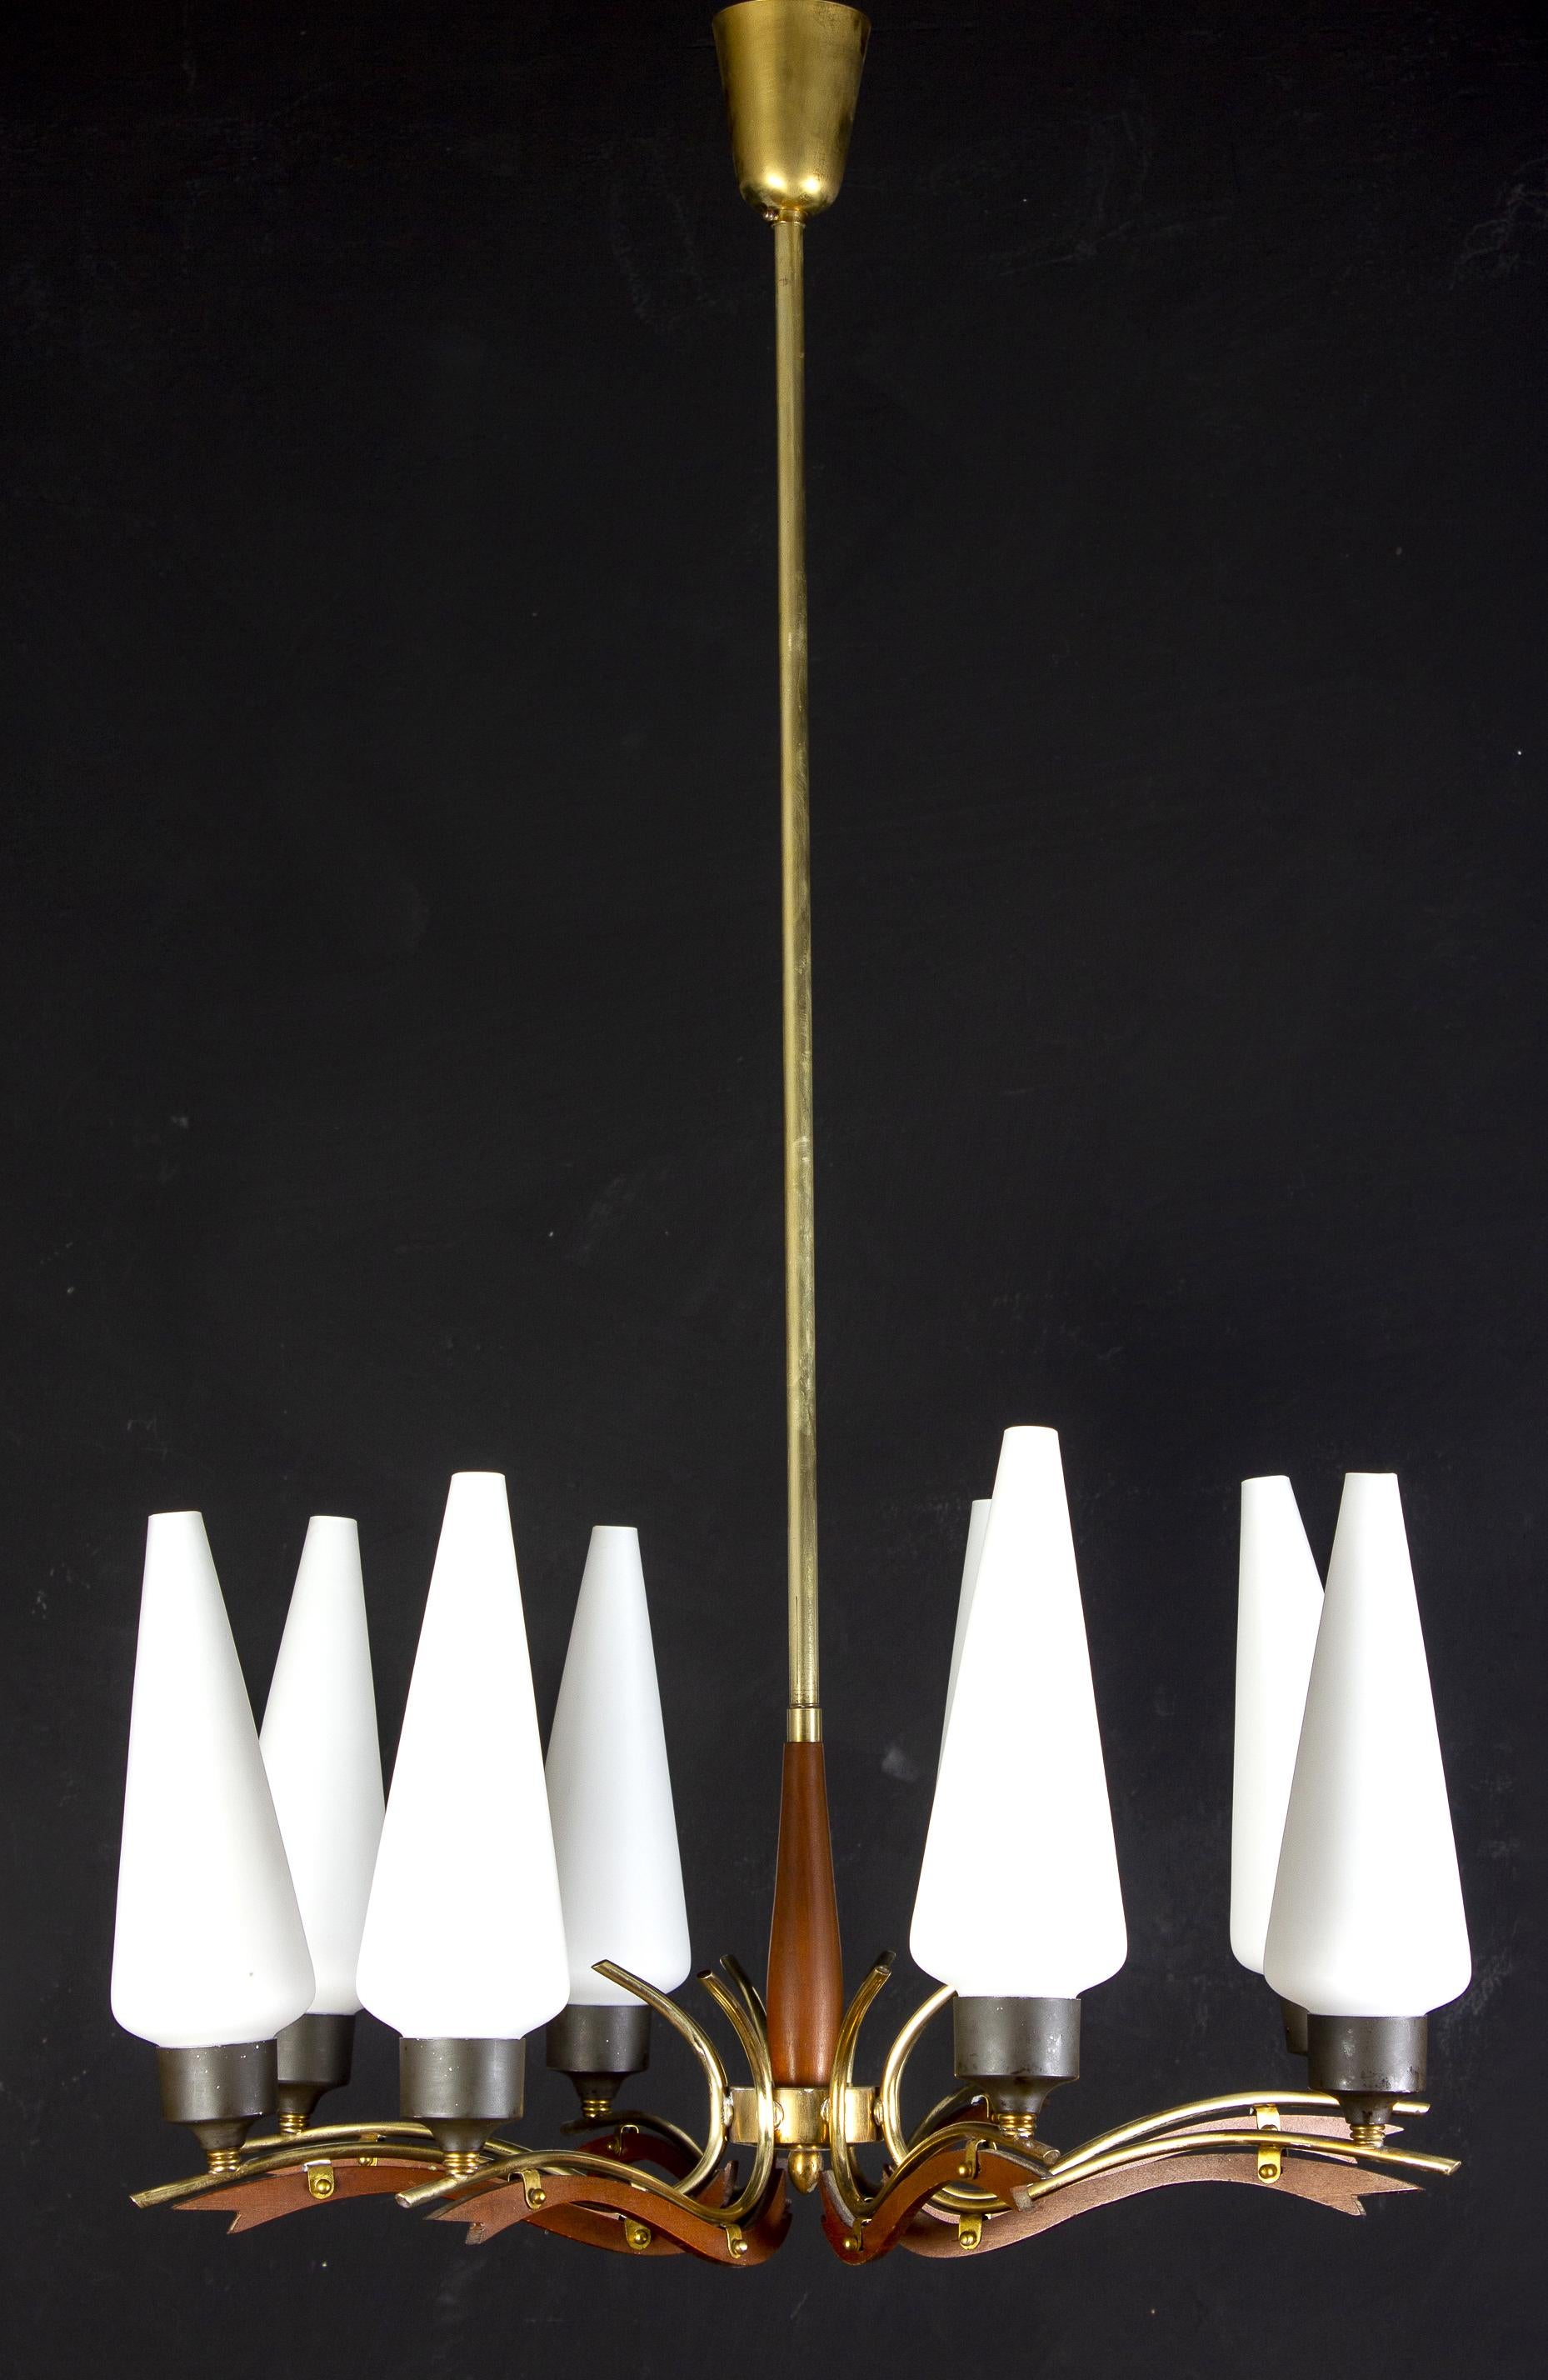 Geradlinige Eleganz, achtarmiger Kronleuchter aus Messing und Holz, mit konischen Milchglasschirmen auf einem Messingrahmen mit Holzdetails.
Ausgezeichneter Vintage-Zustand
Acht E 14-Glühbirnen.
 